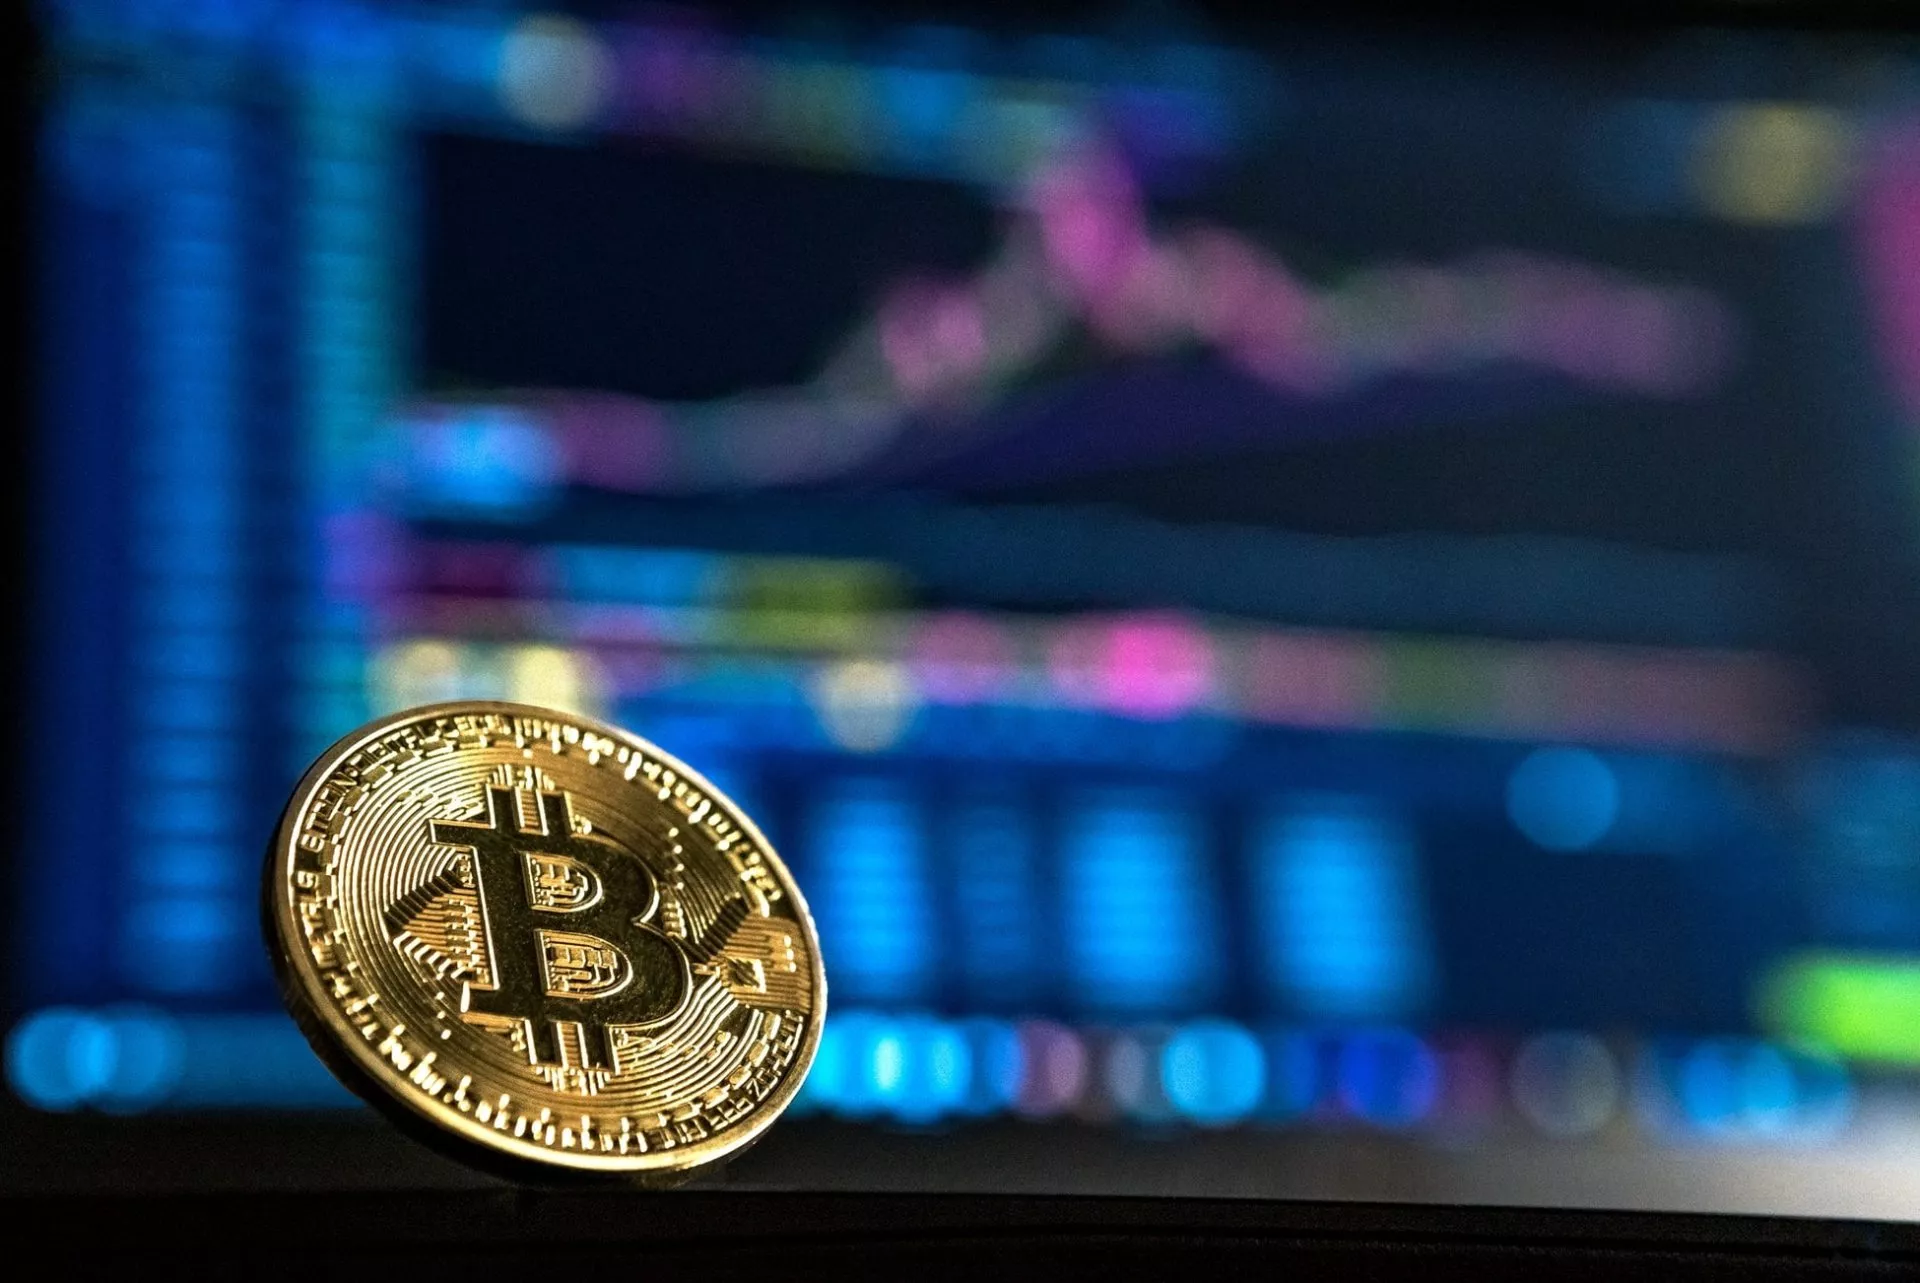 Bitcoin bereikt $11.6k – Traders verwachten een prijs van $15k